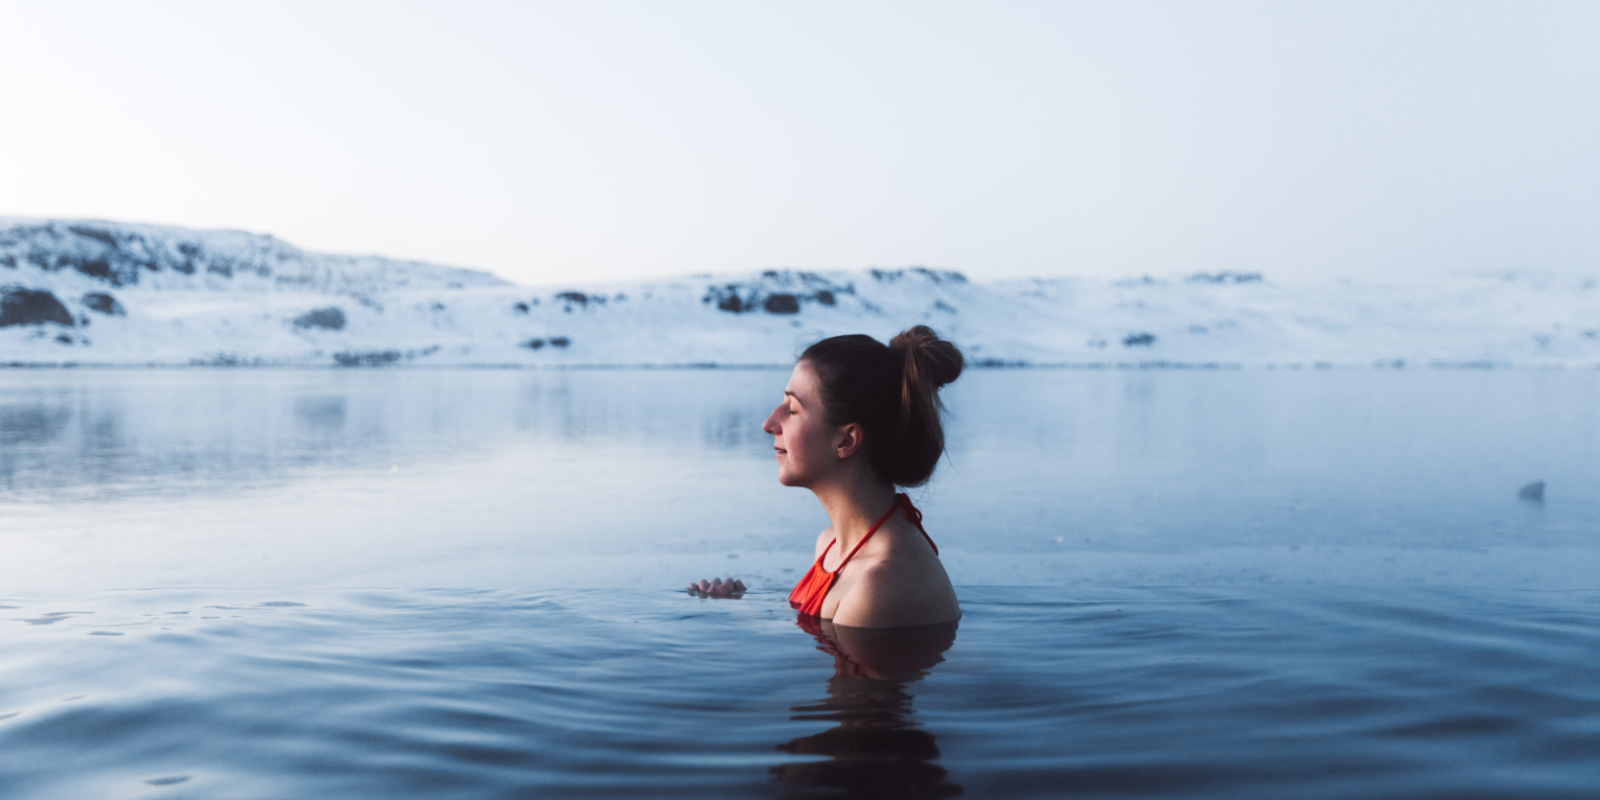 Frau ist glücklich beim Eisbaden in einem See